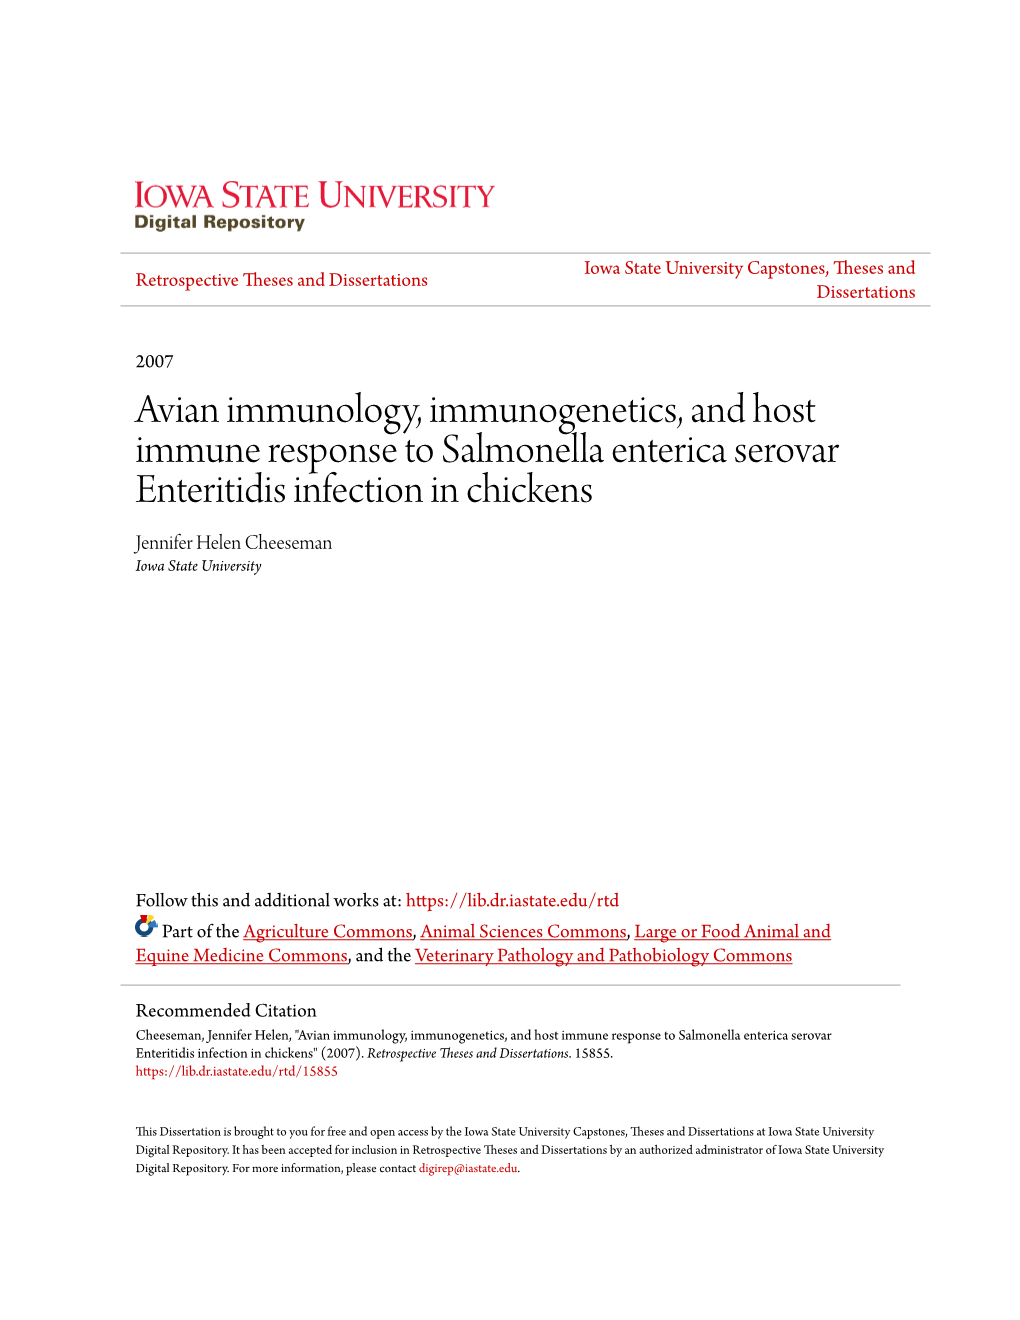 Avian Immunology, Immunogenetics, and Host Immune Response To